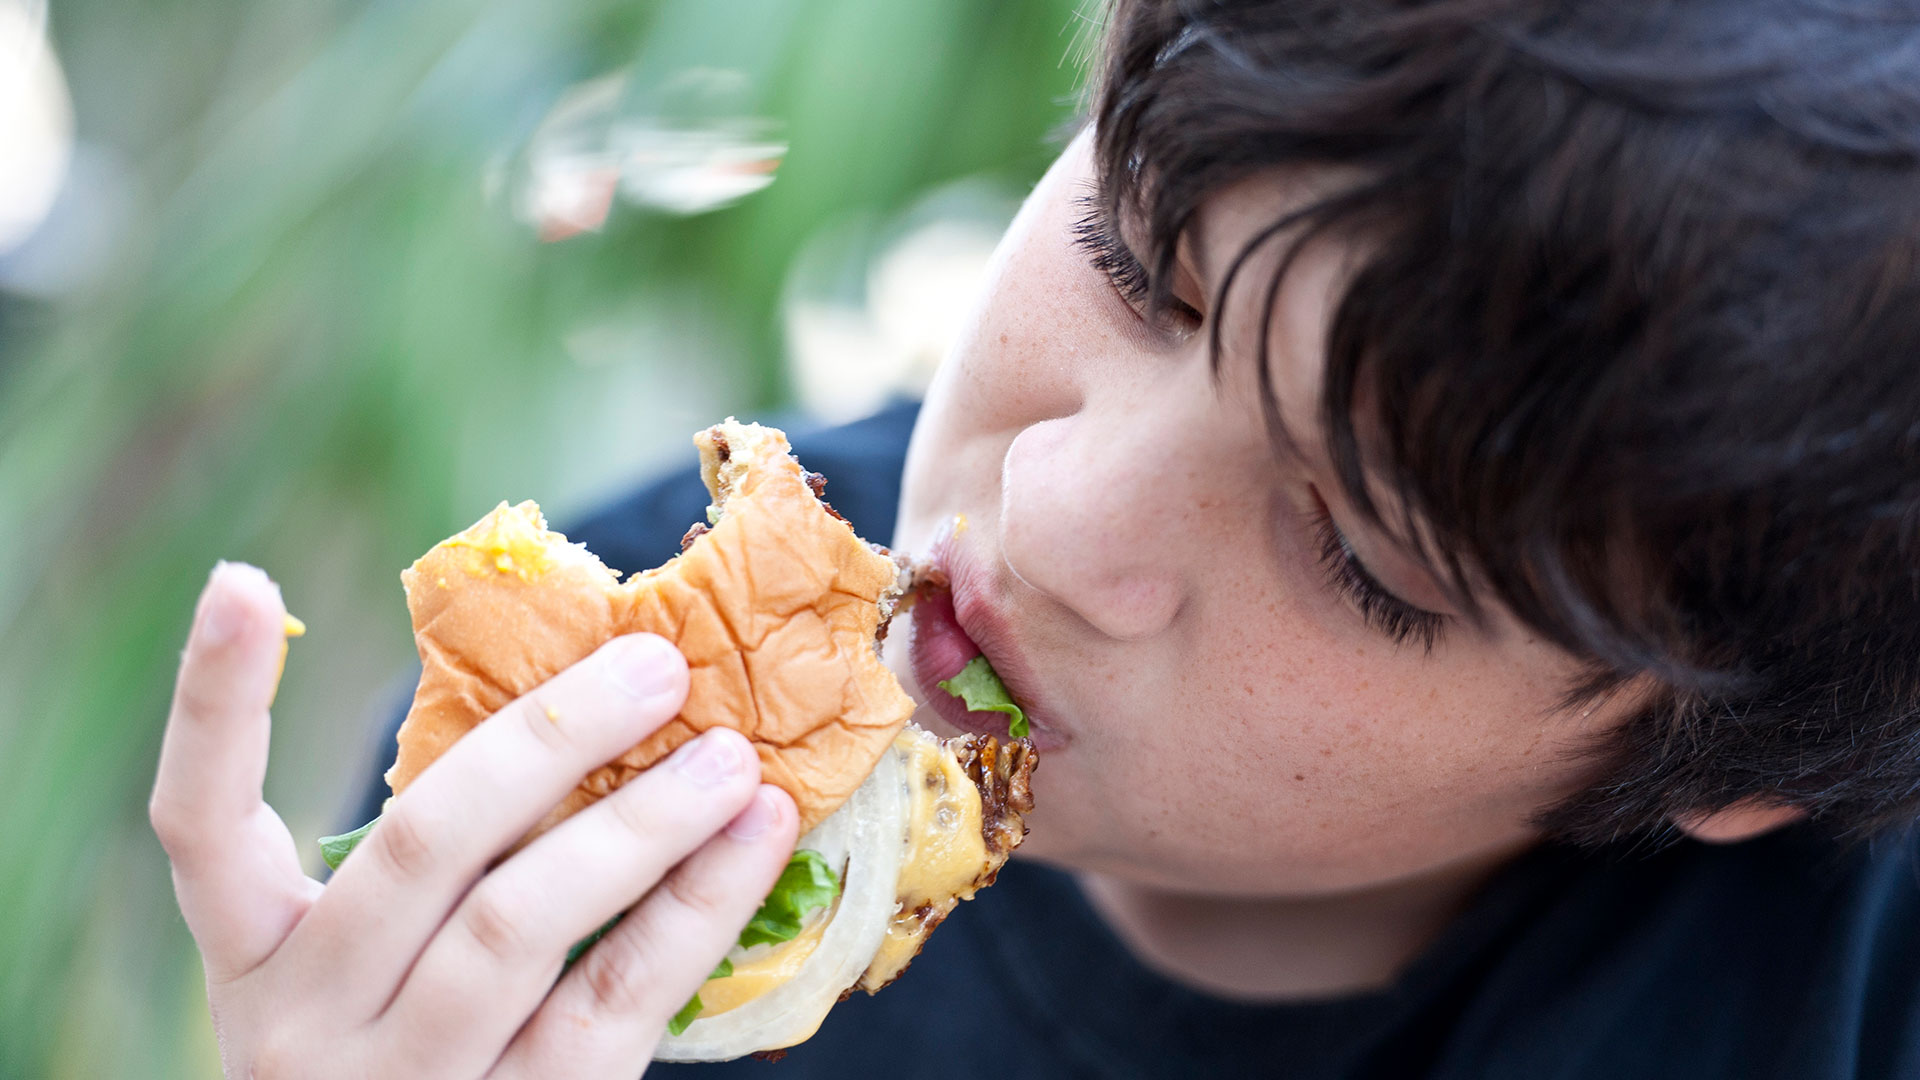 Habitualmente se atribuye el contagio a las hamburguesas mal cocidas, pero otros alimentos también pueden transmitir la Escherichia coli (Getty)